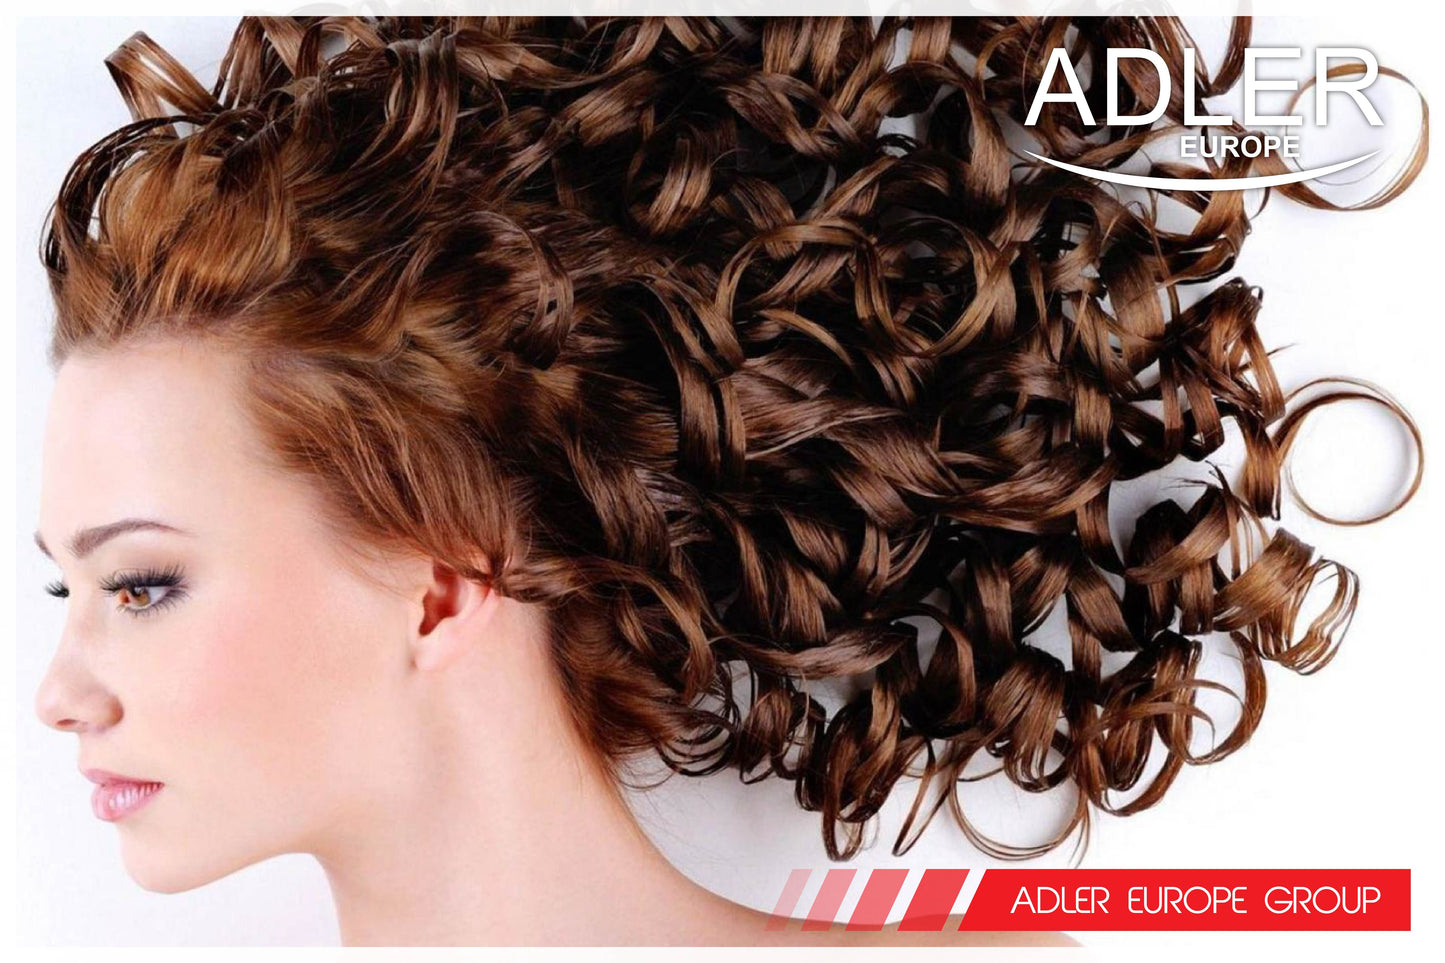 Adler AD2106 Hair Curler